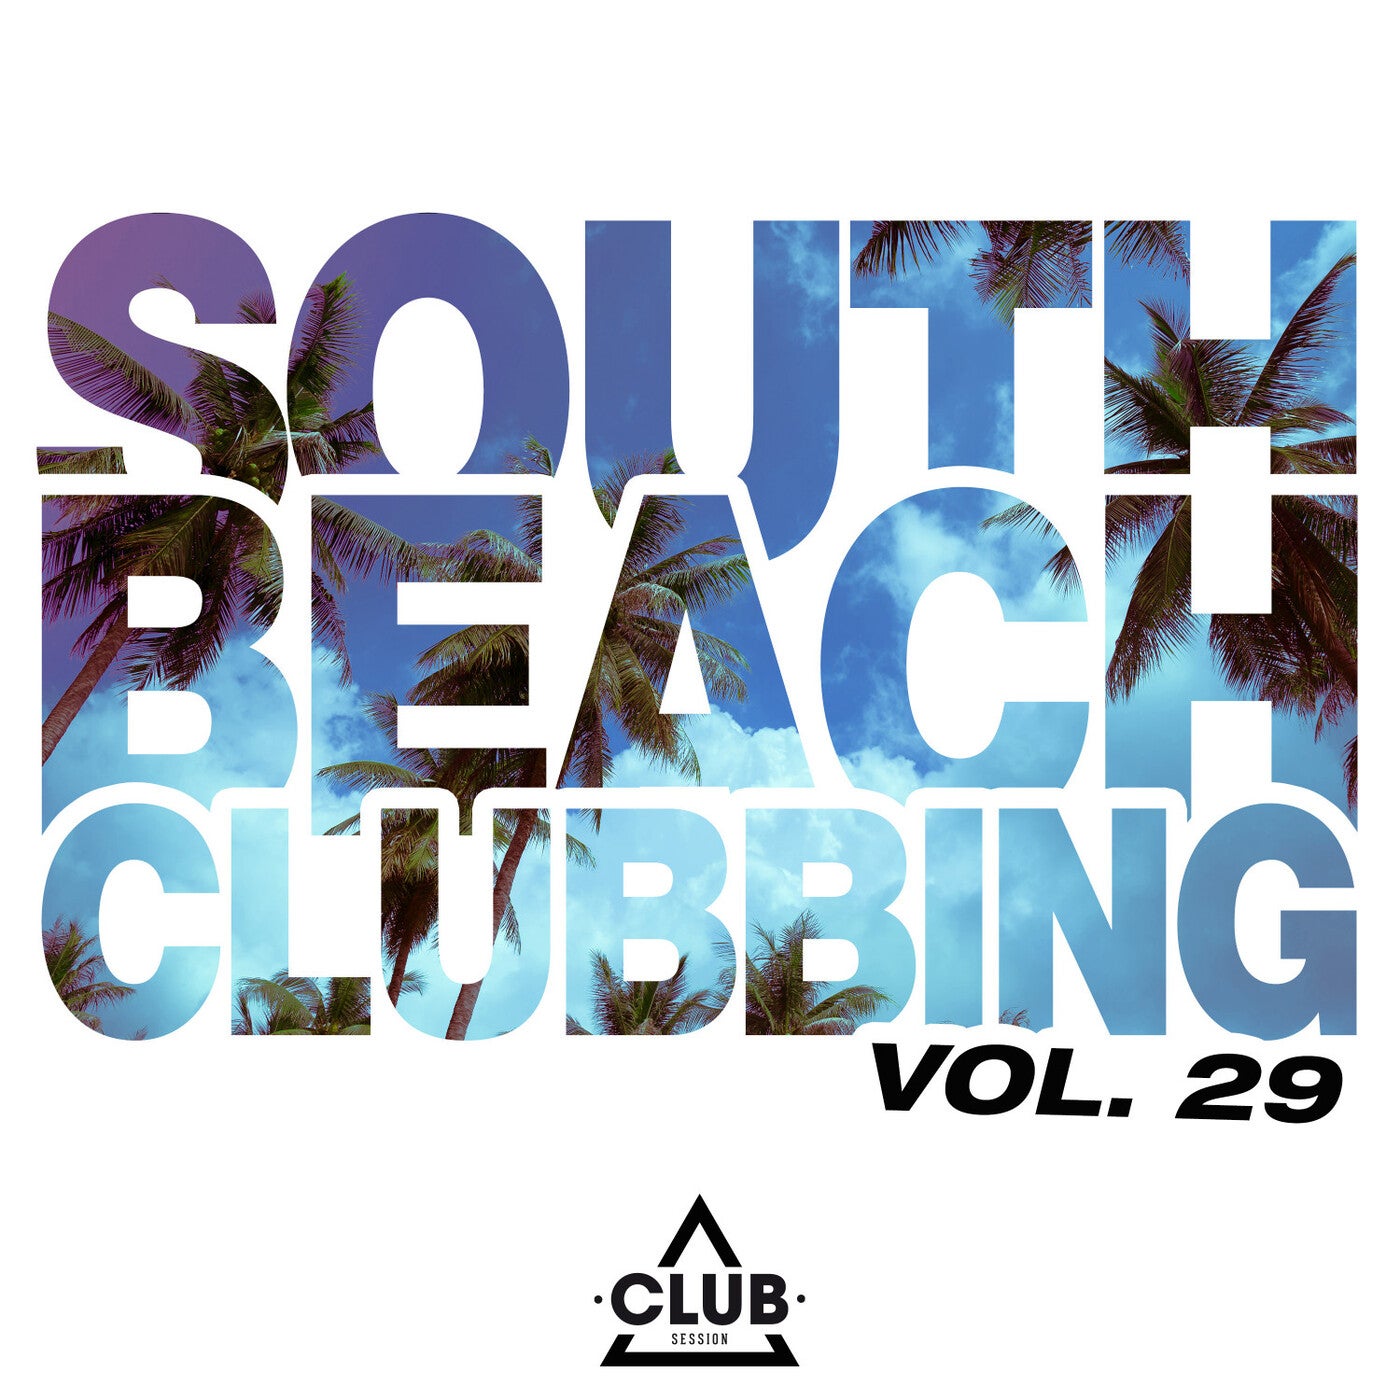 South Beach Clubbing Vol. 29